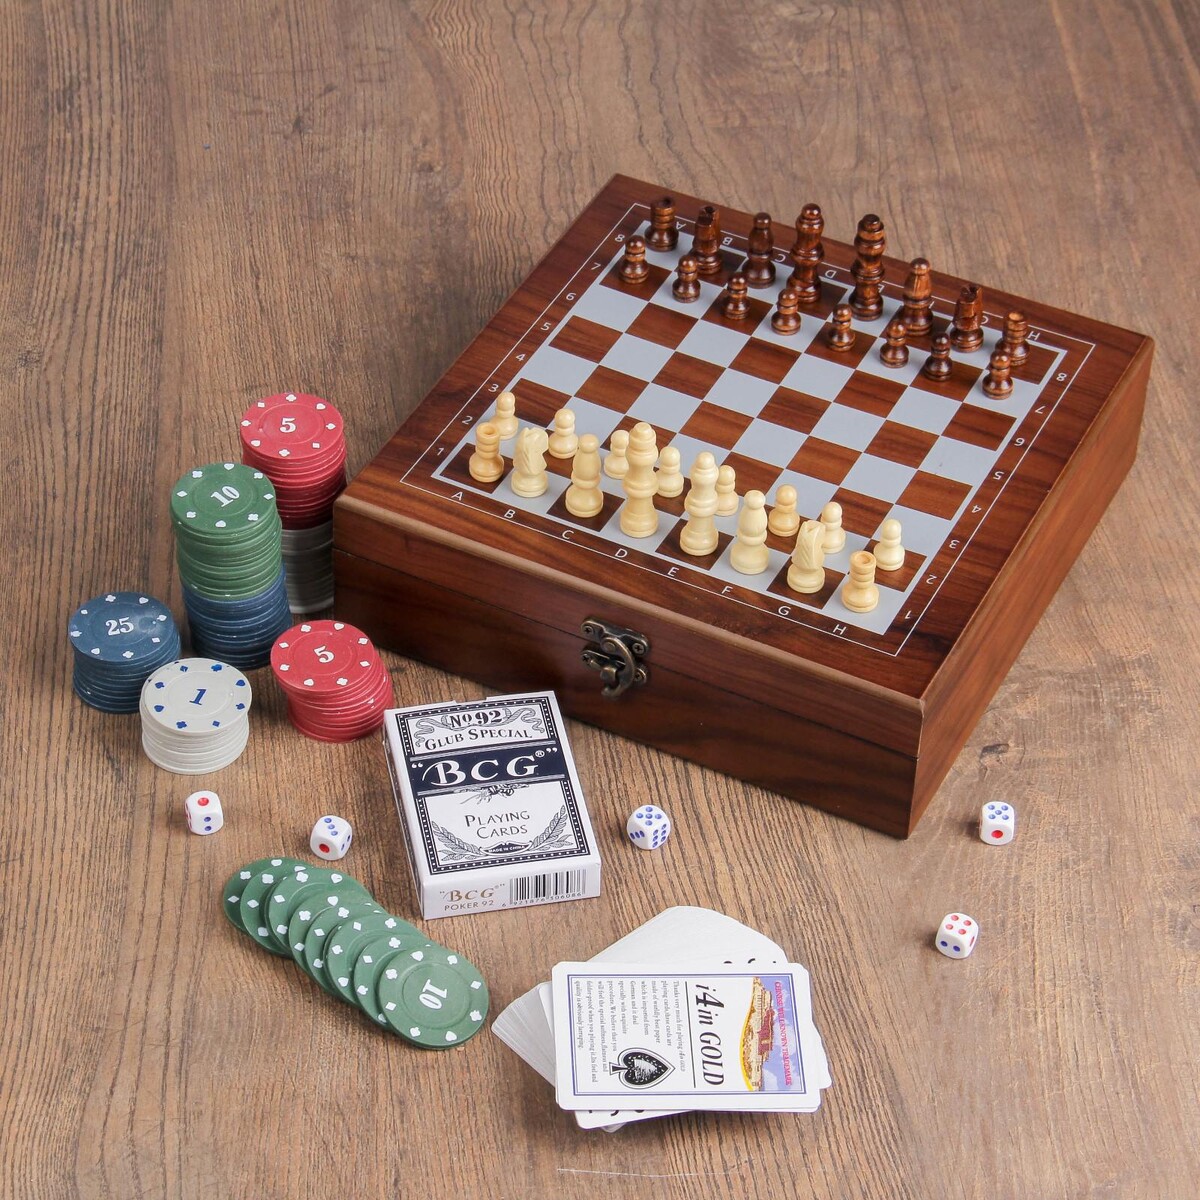 Набор 4 в 1: шахматы, покер (100 фишек, 2 колоды, кубики 5 шт), 24 х 24 см набор кубиков 12шт кубики для умниковучим алфавит пластиковые белые 01709